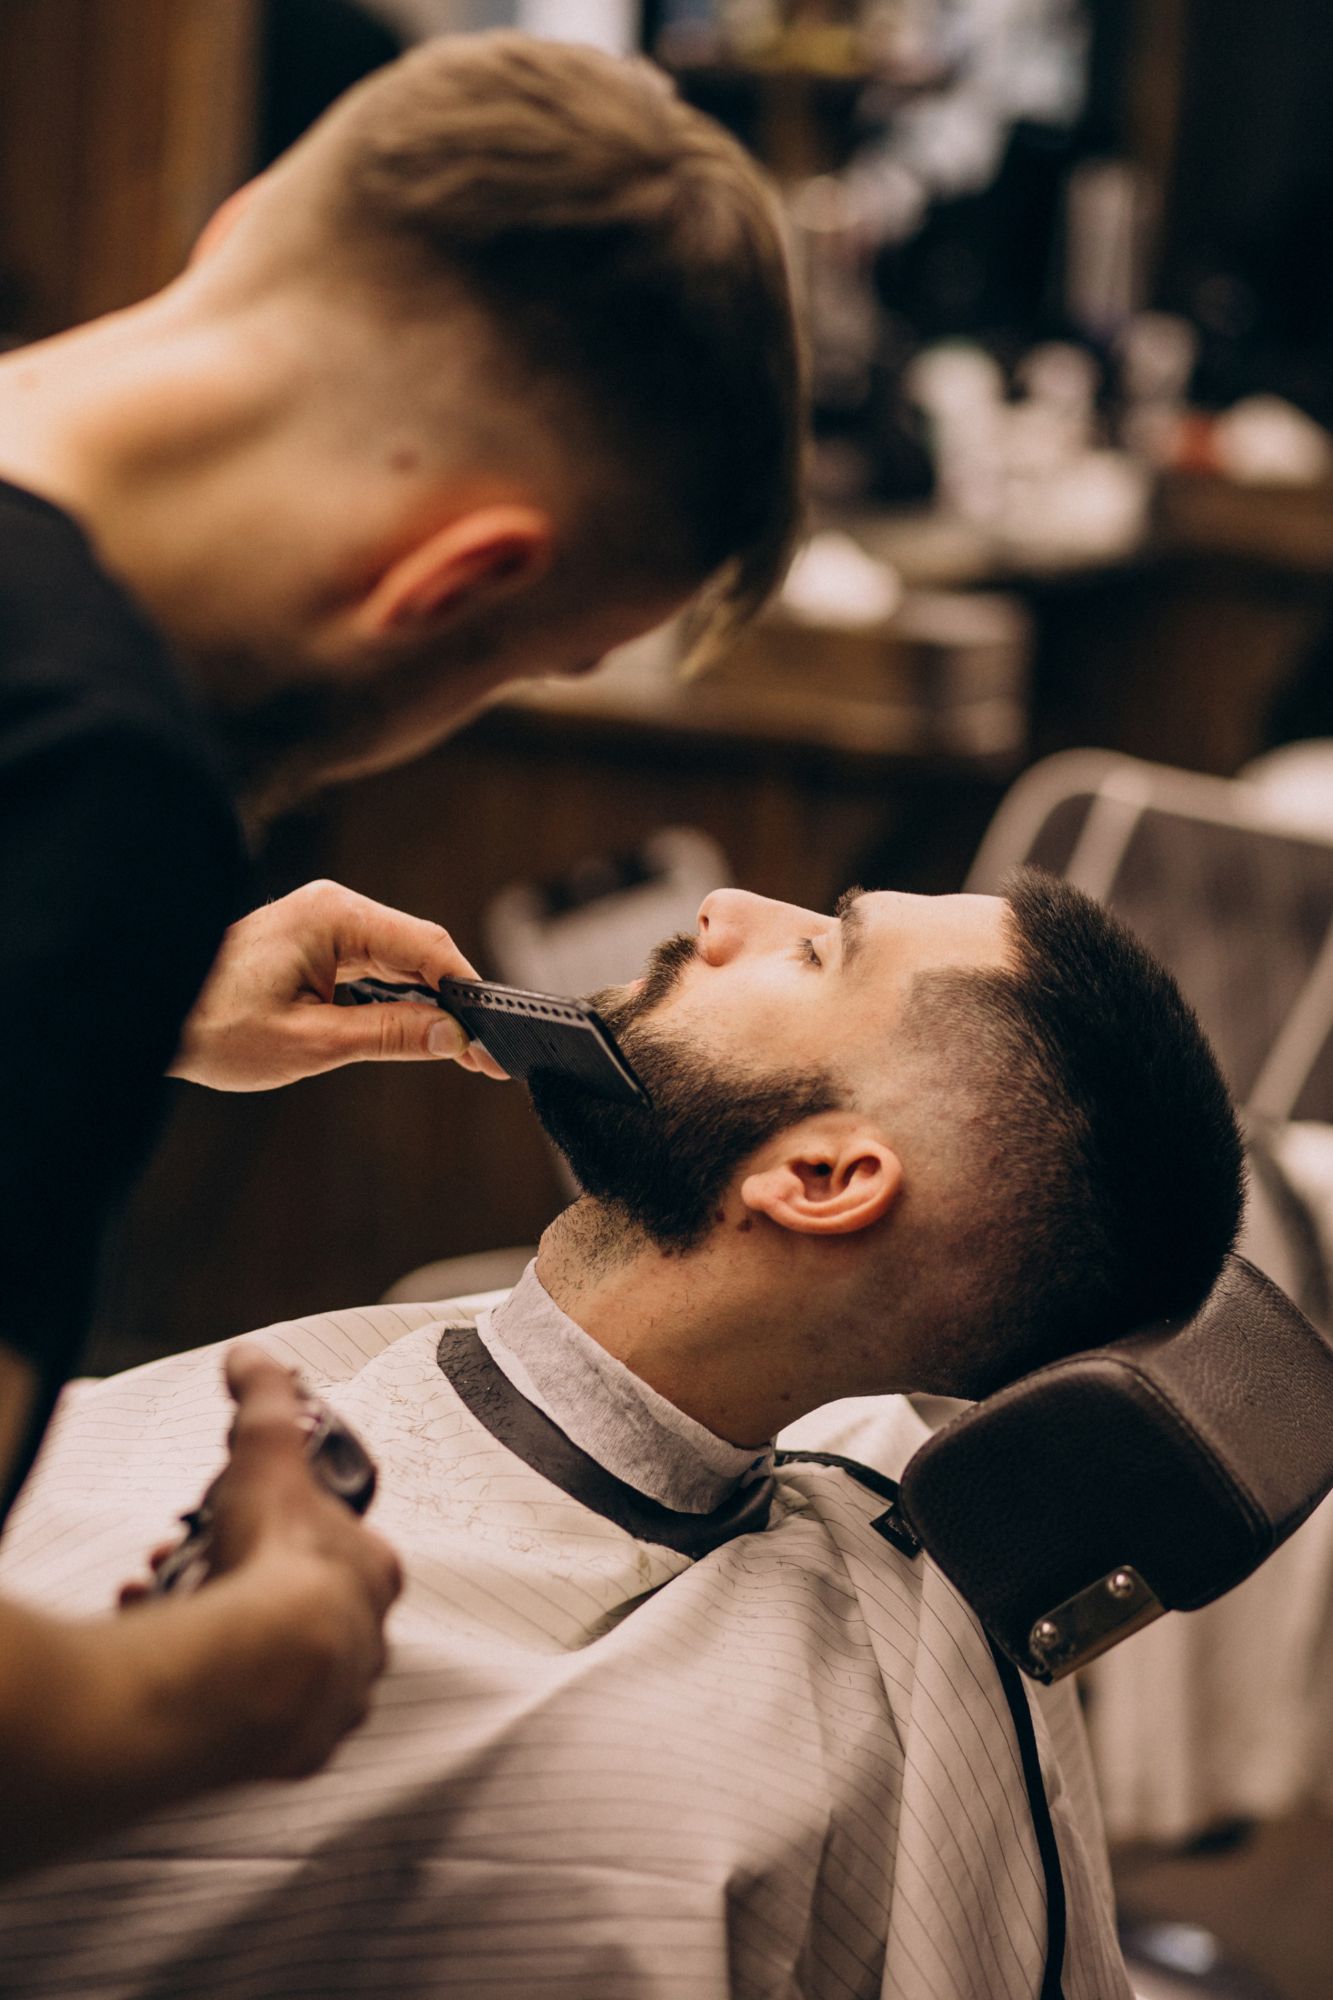 Barbero Barbería Hombres Corte De - Foto gratis en Pixabay - Pixabay